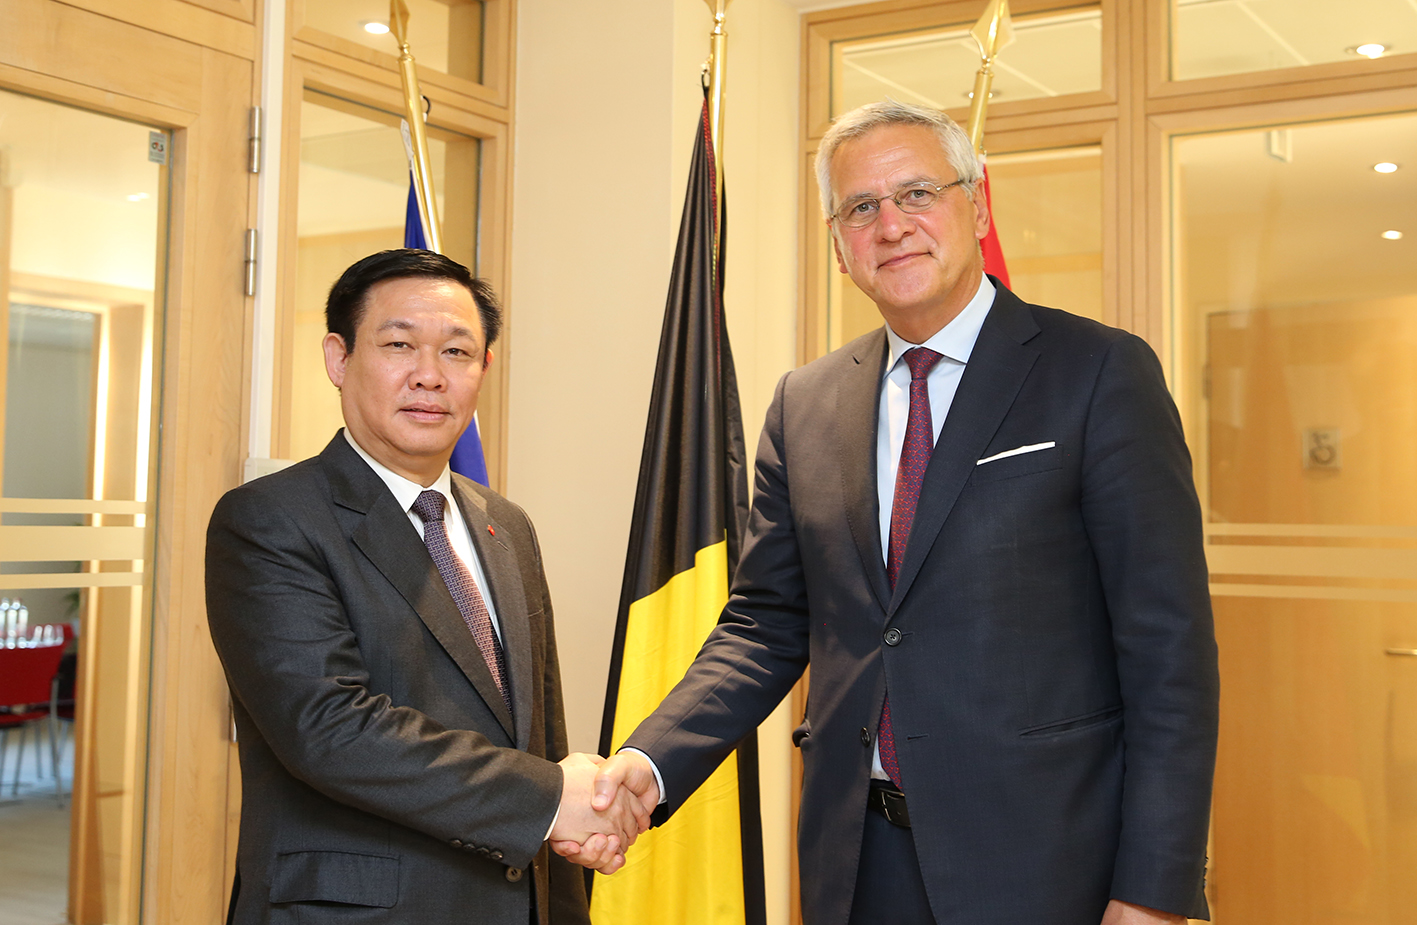 Phó Thủ tướng Vương Đình Huệ làm việc với Phó Thủ tướng kiêm Bộ trưởng Việc làm và Kinh tế Bỉ Kris Peeters. Ảnh: VGP/Thành Chung